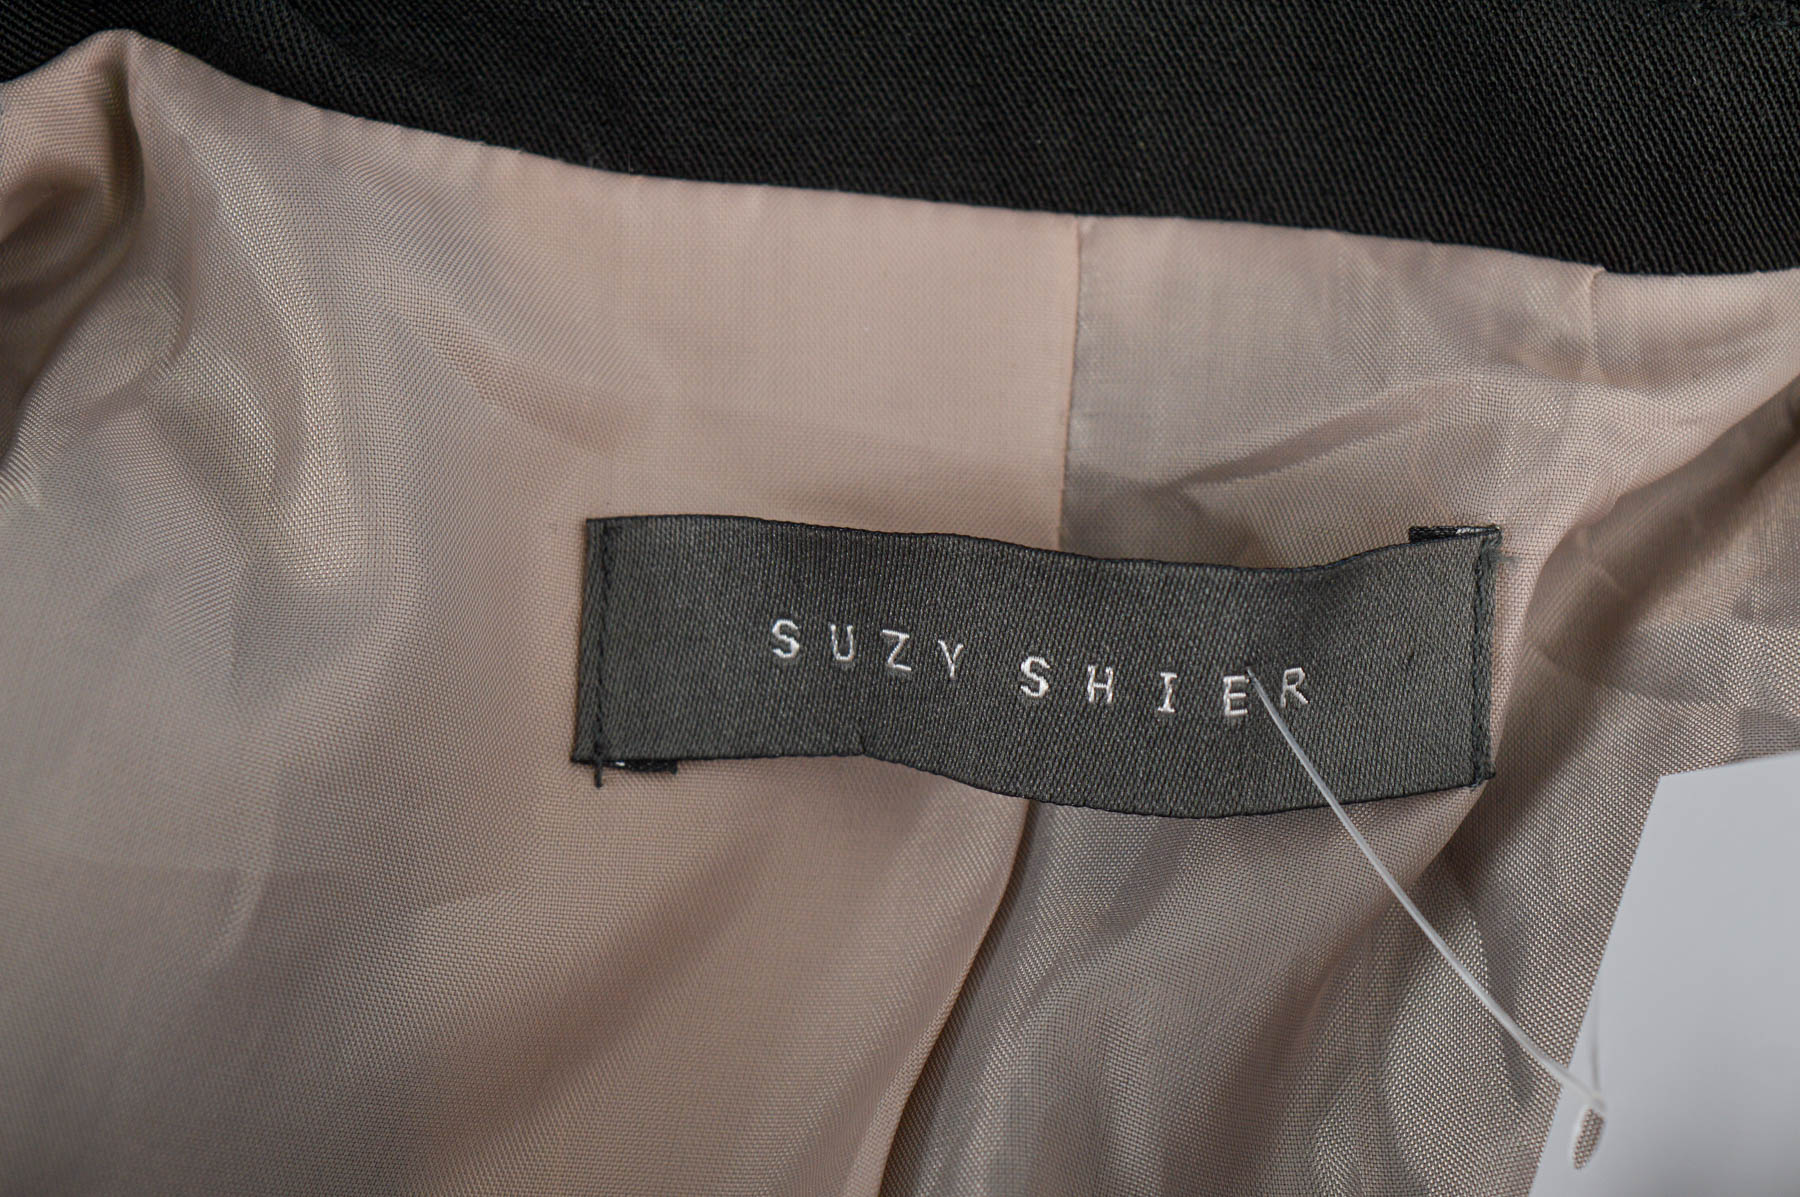 Women's blazer - Suzy Shier - 2